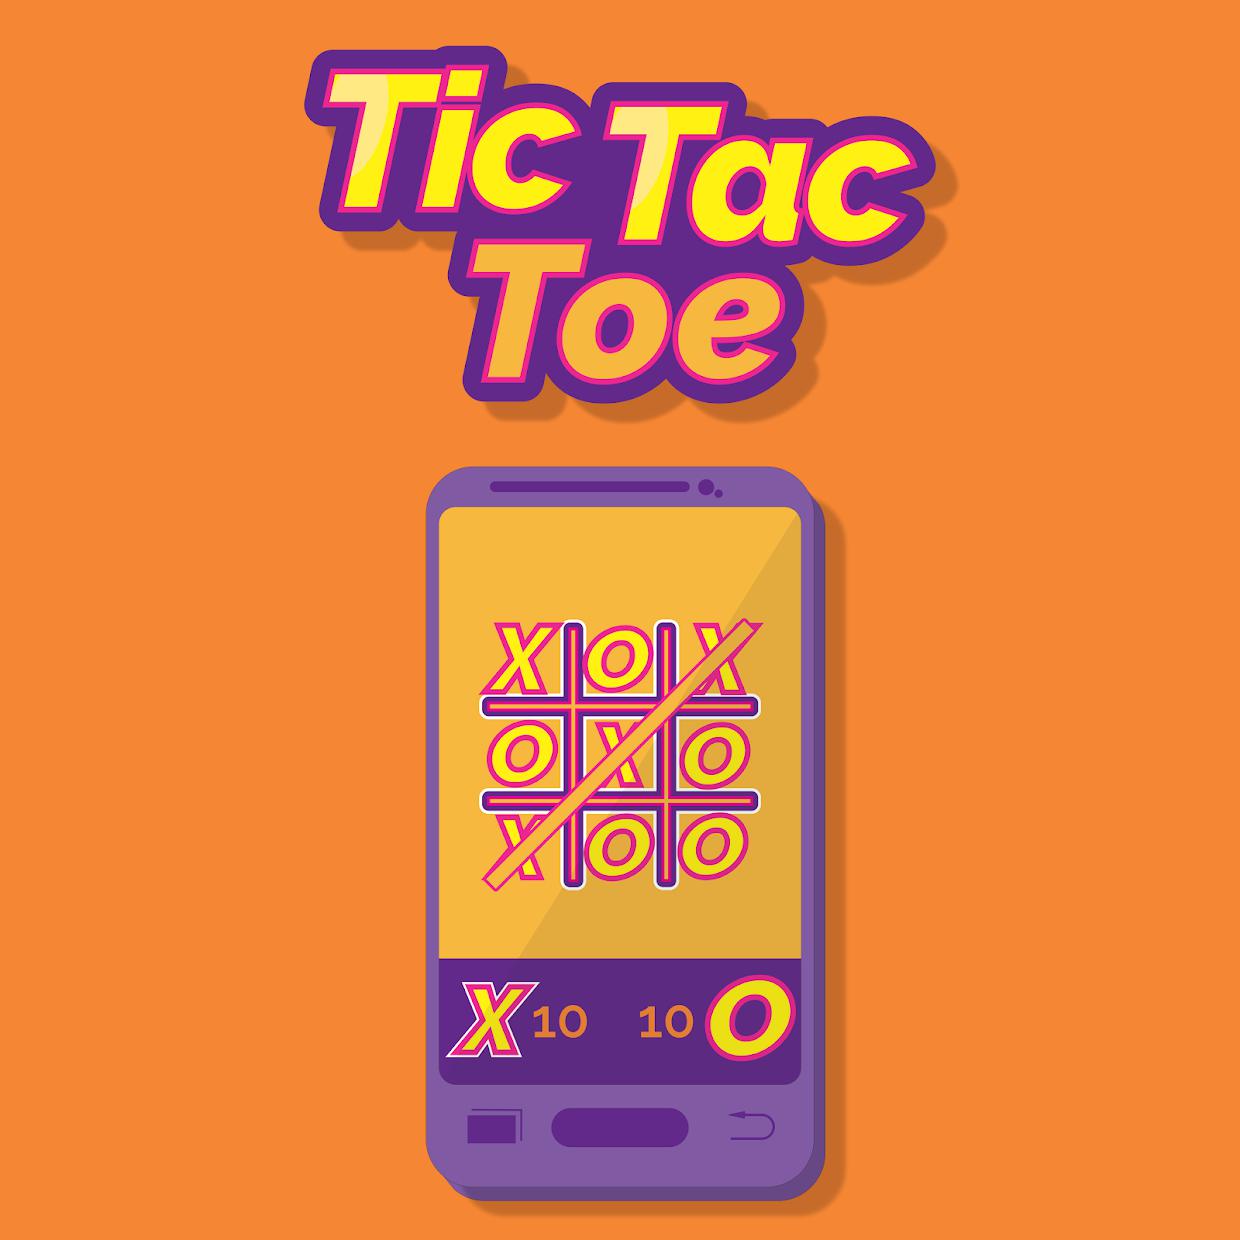 Tic Tac Toe - Jogo da velha_截图_2